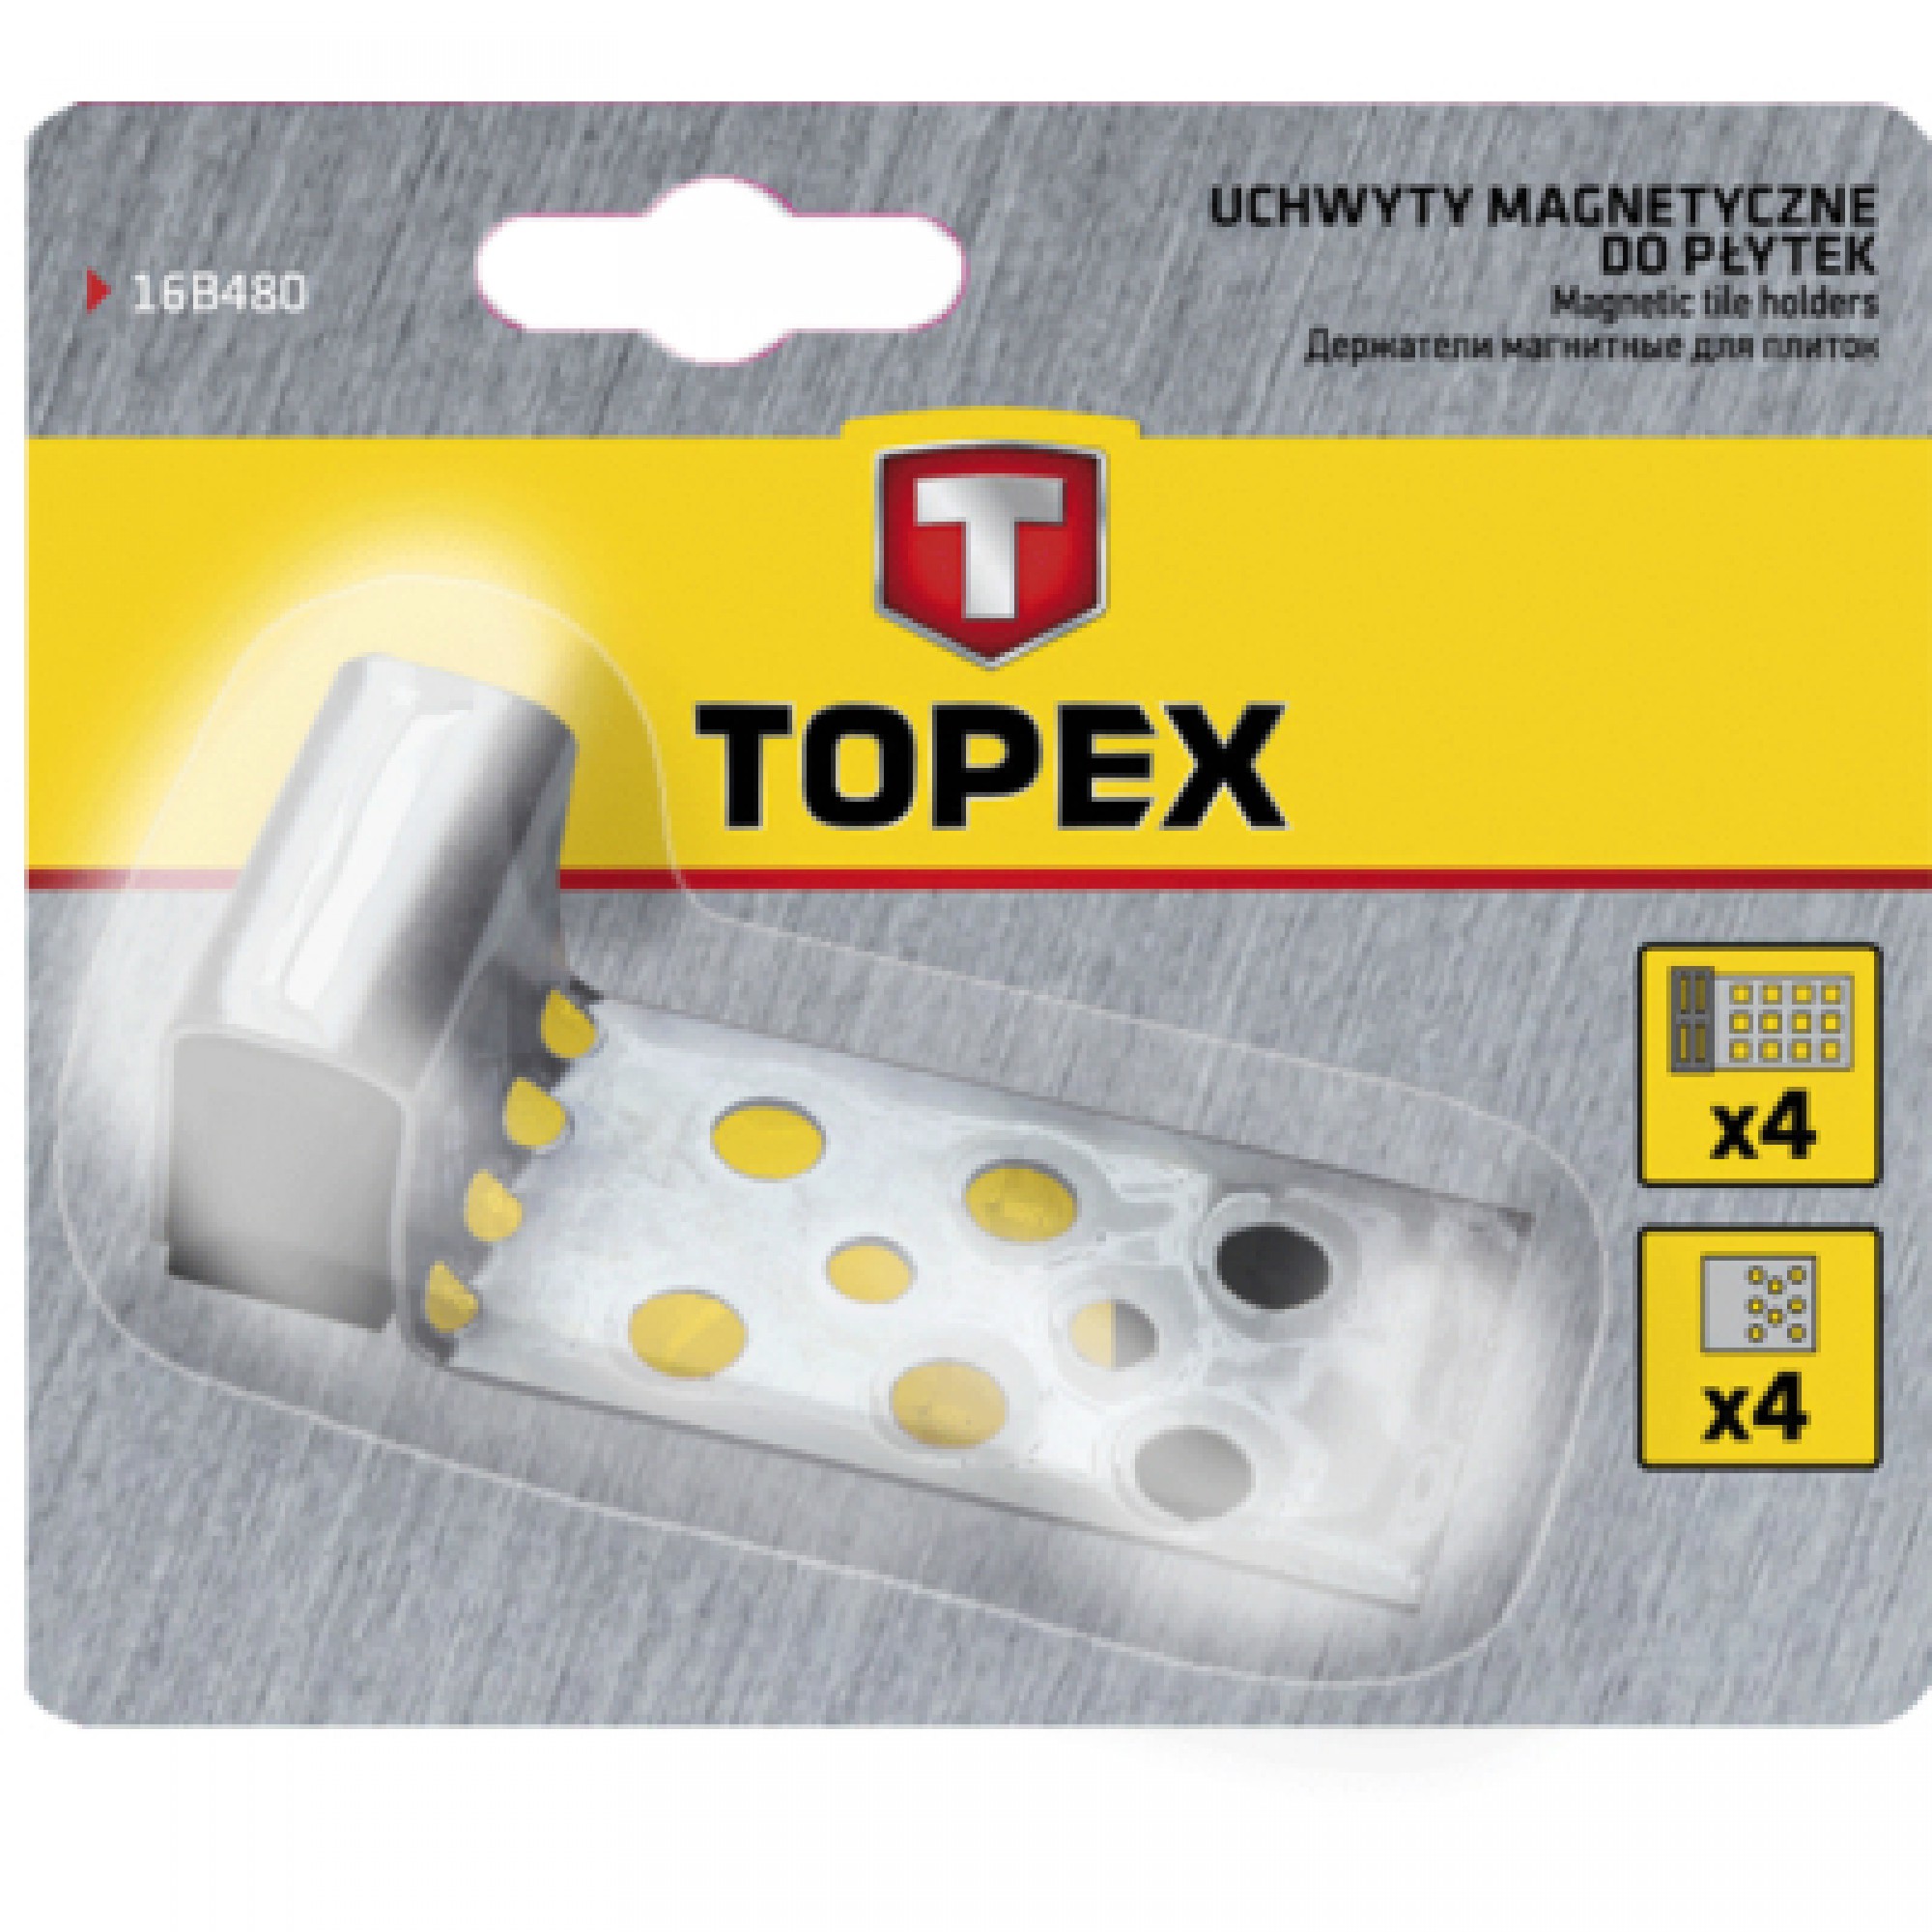 Набір інструментів Topex магніти для кахельної плитки 4 шт. (16B480)